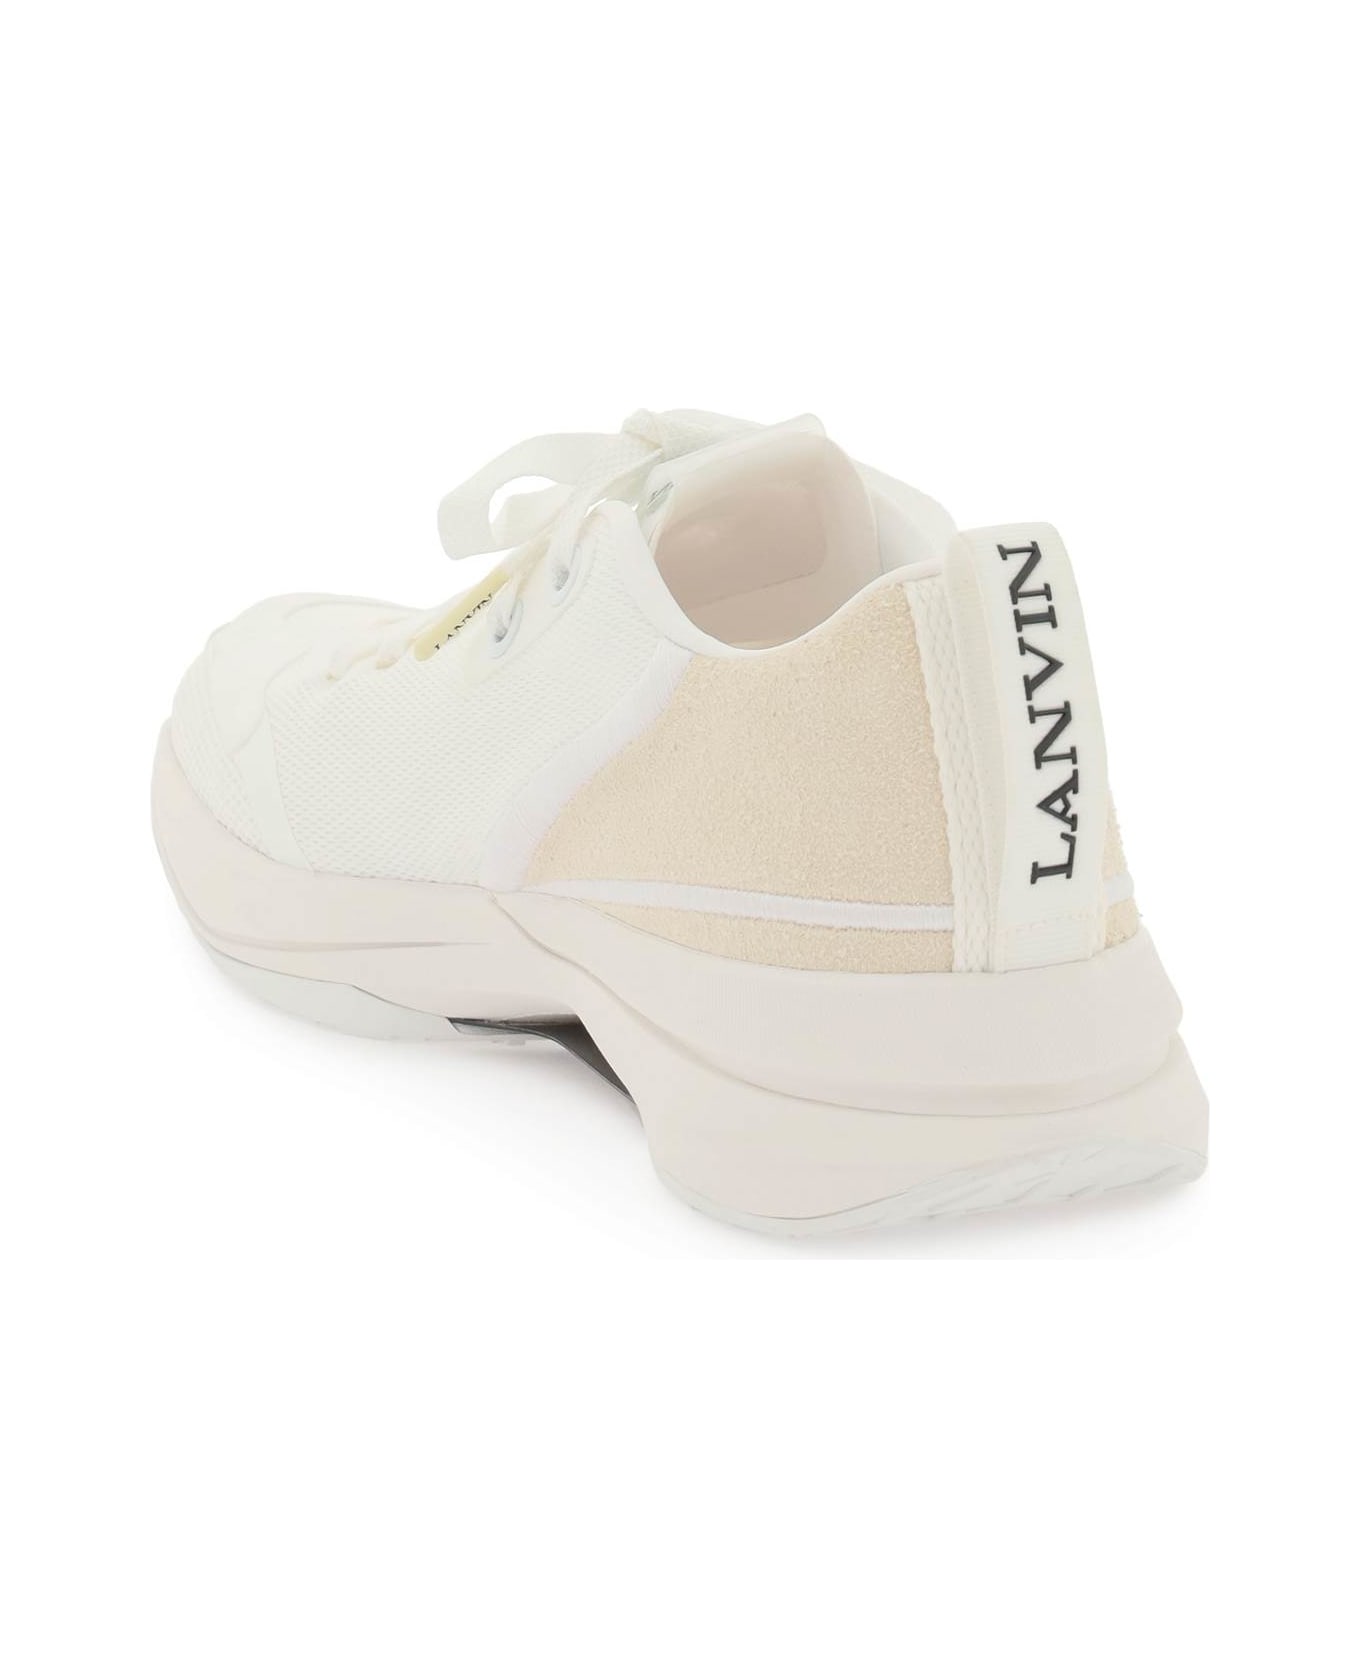 Lanvin Mesh Li Sneakers - White White